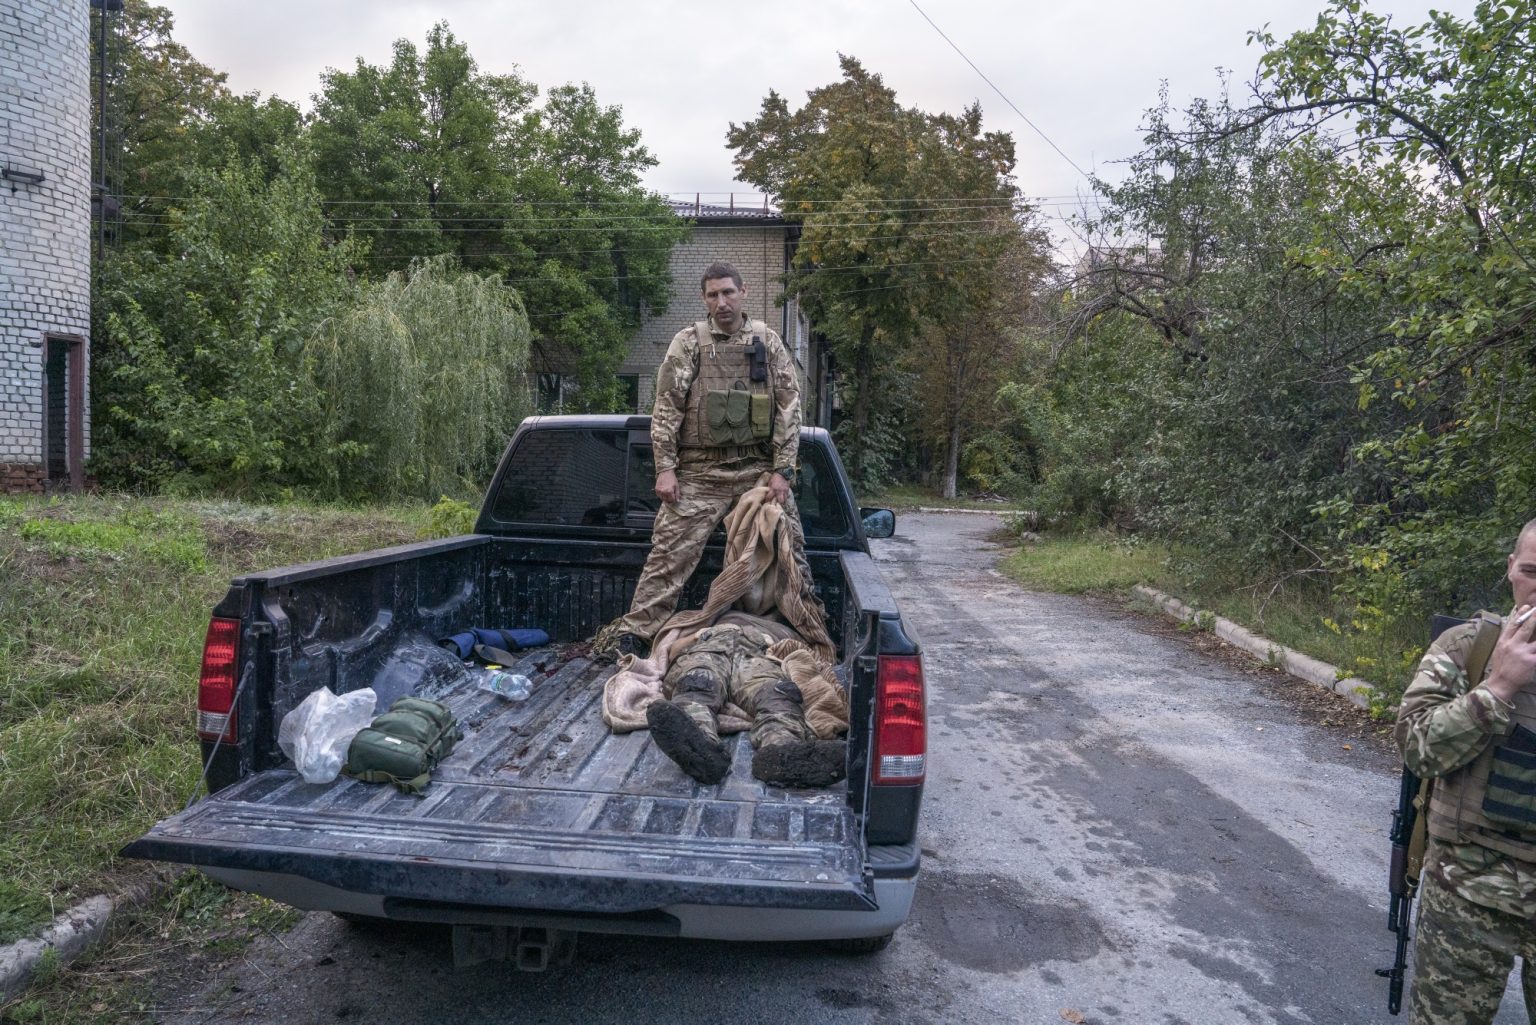 UKRAINE, Barvinkove.  September 17, 2022 - The dead body of Ivan Shpylyevoi, nom de guerre Sadist", is transferred to the morgue of the Barvinkove hospital. He died from an internal bleeding after being injured from the blast of an anti-personnel mine, south of Sulyhivka village.